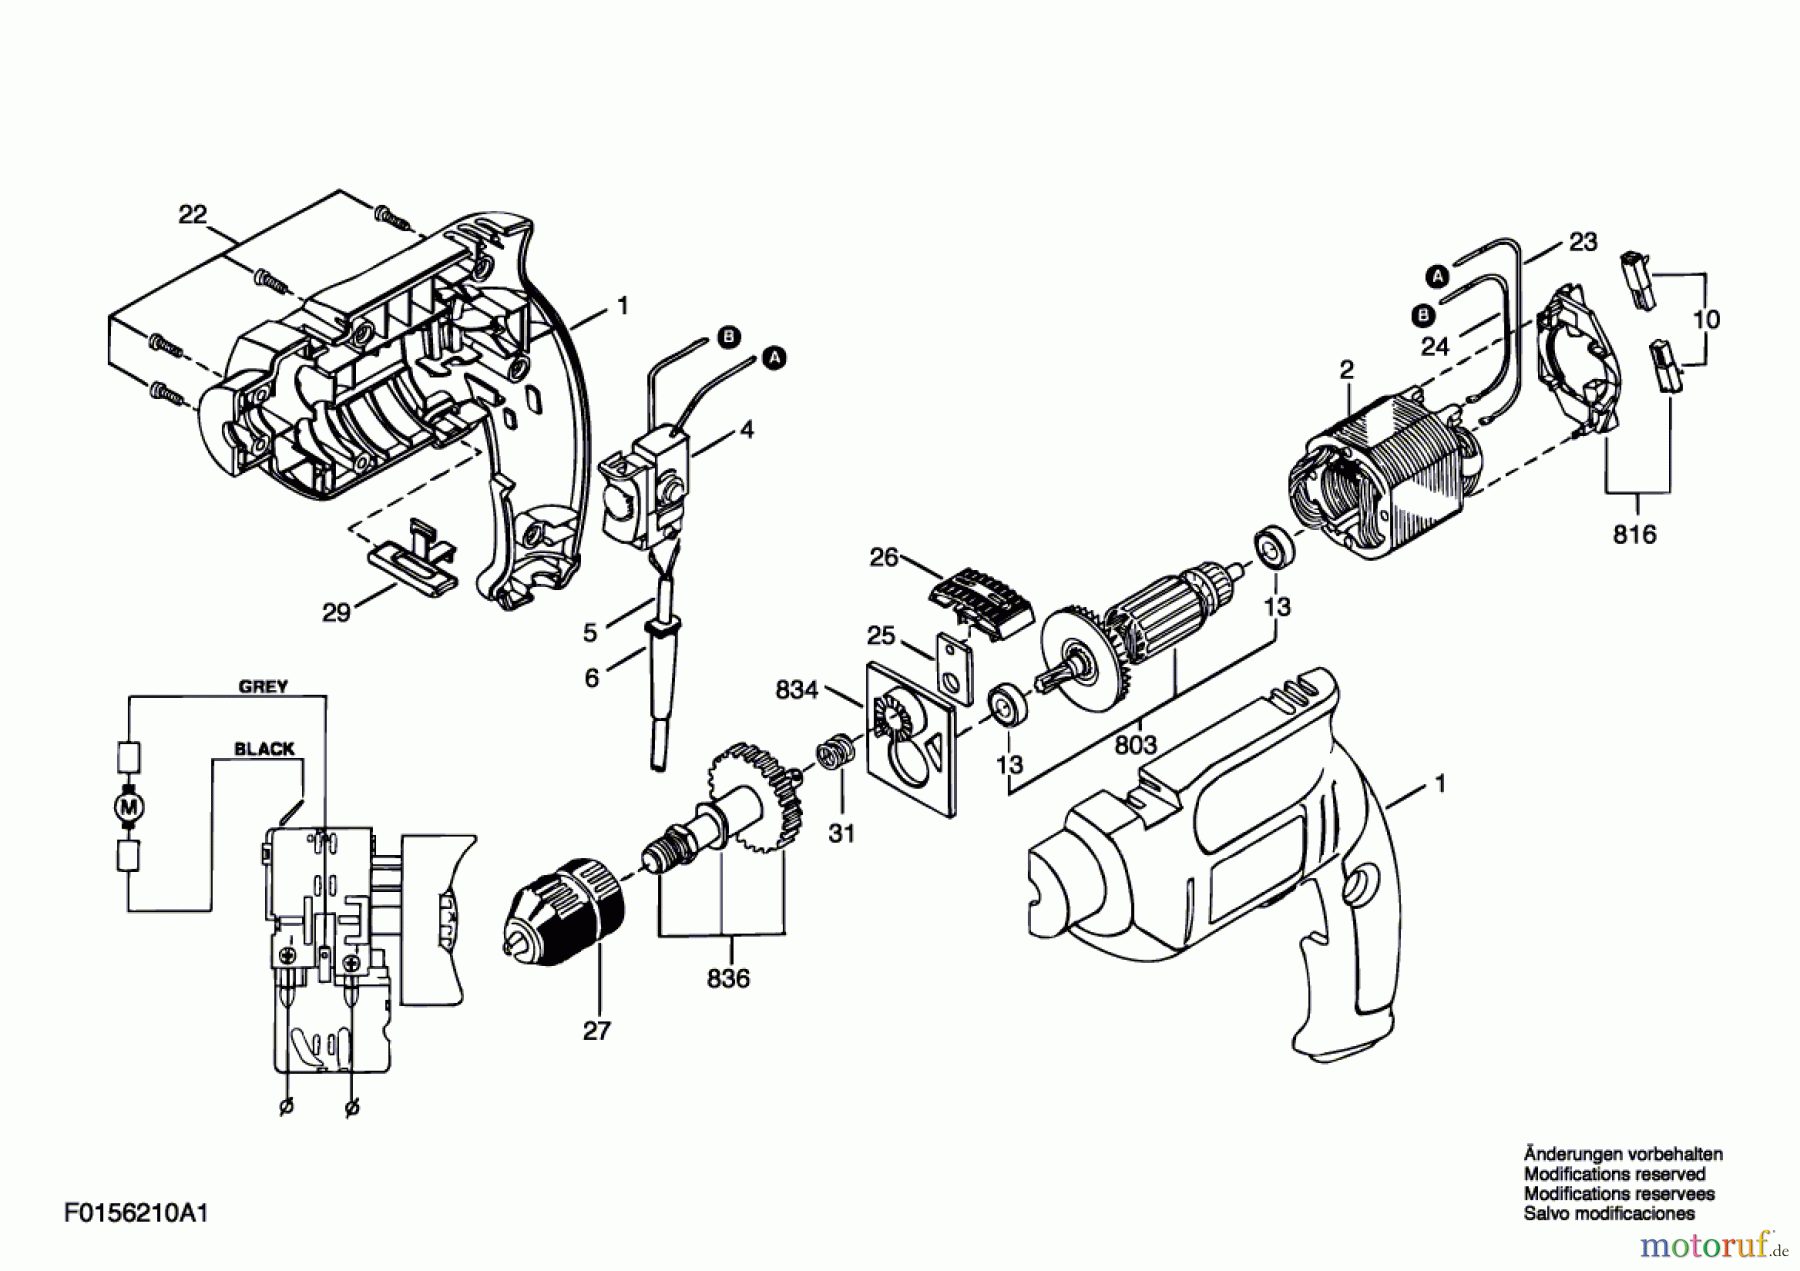  Bosch Werkzeug Ratsche 6210 Seite 1